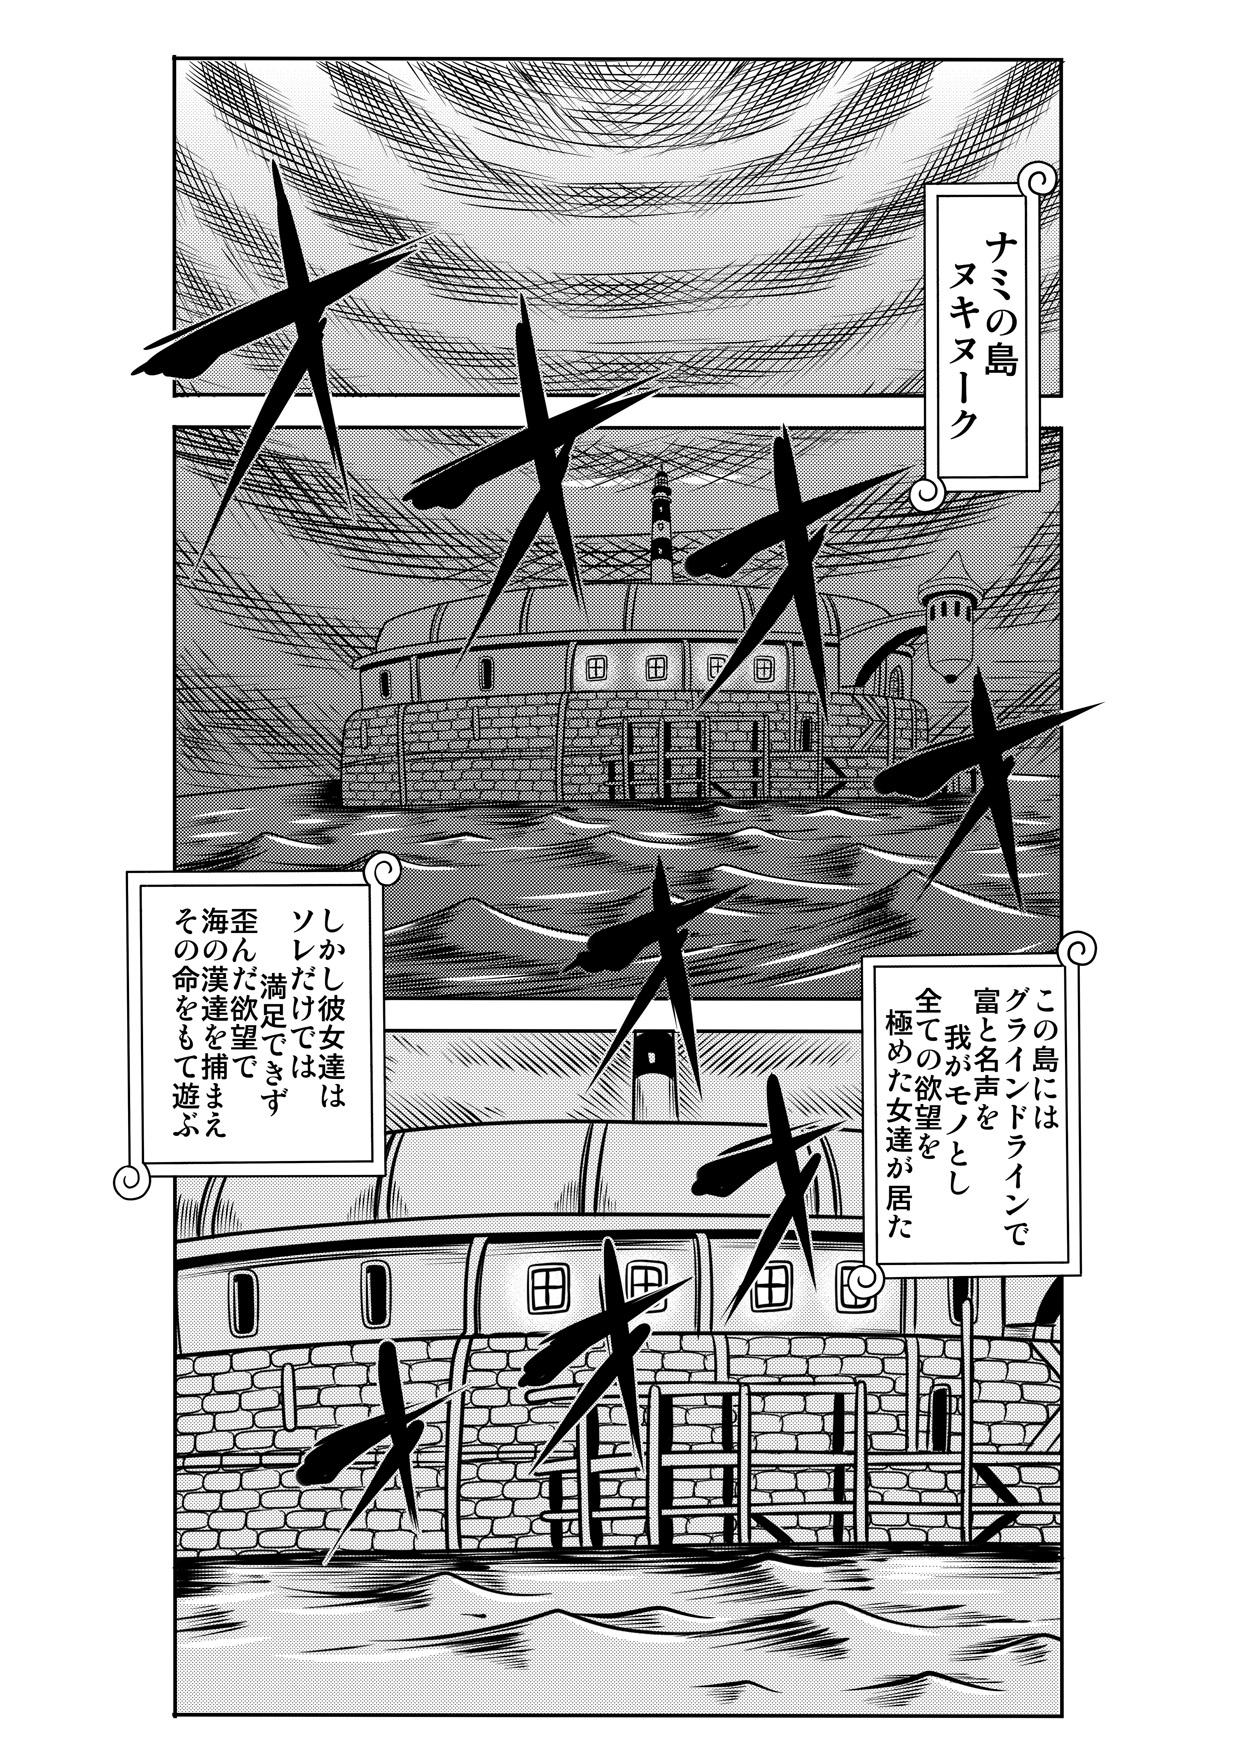 Tight "Nukinuki no Mi" no Nouryokusha 5 - Shinshou Seishounen Juujigun - One piece Spa - Page 2